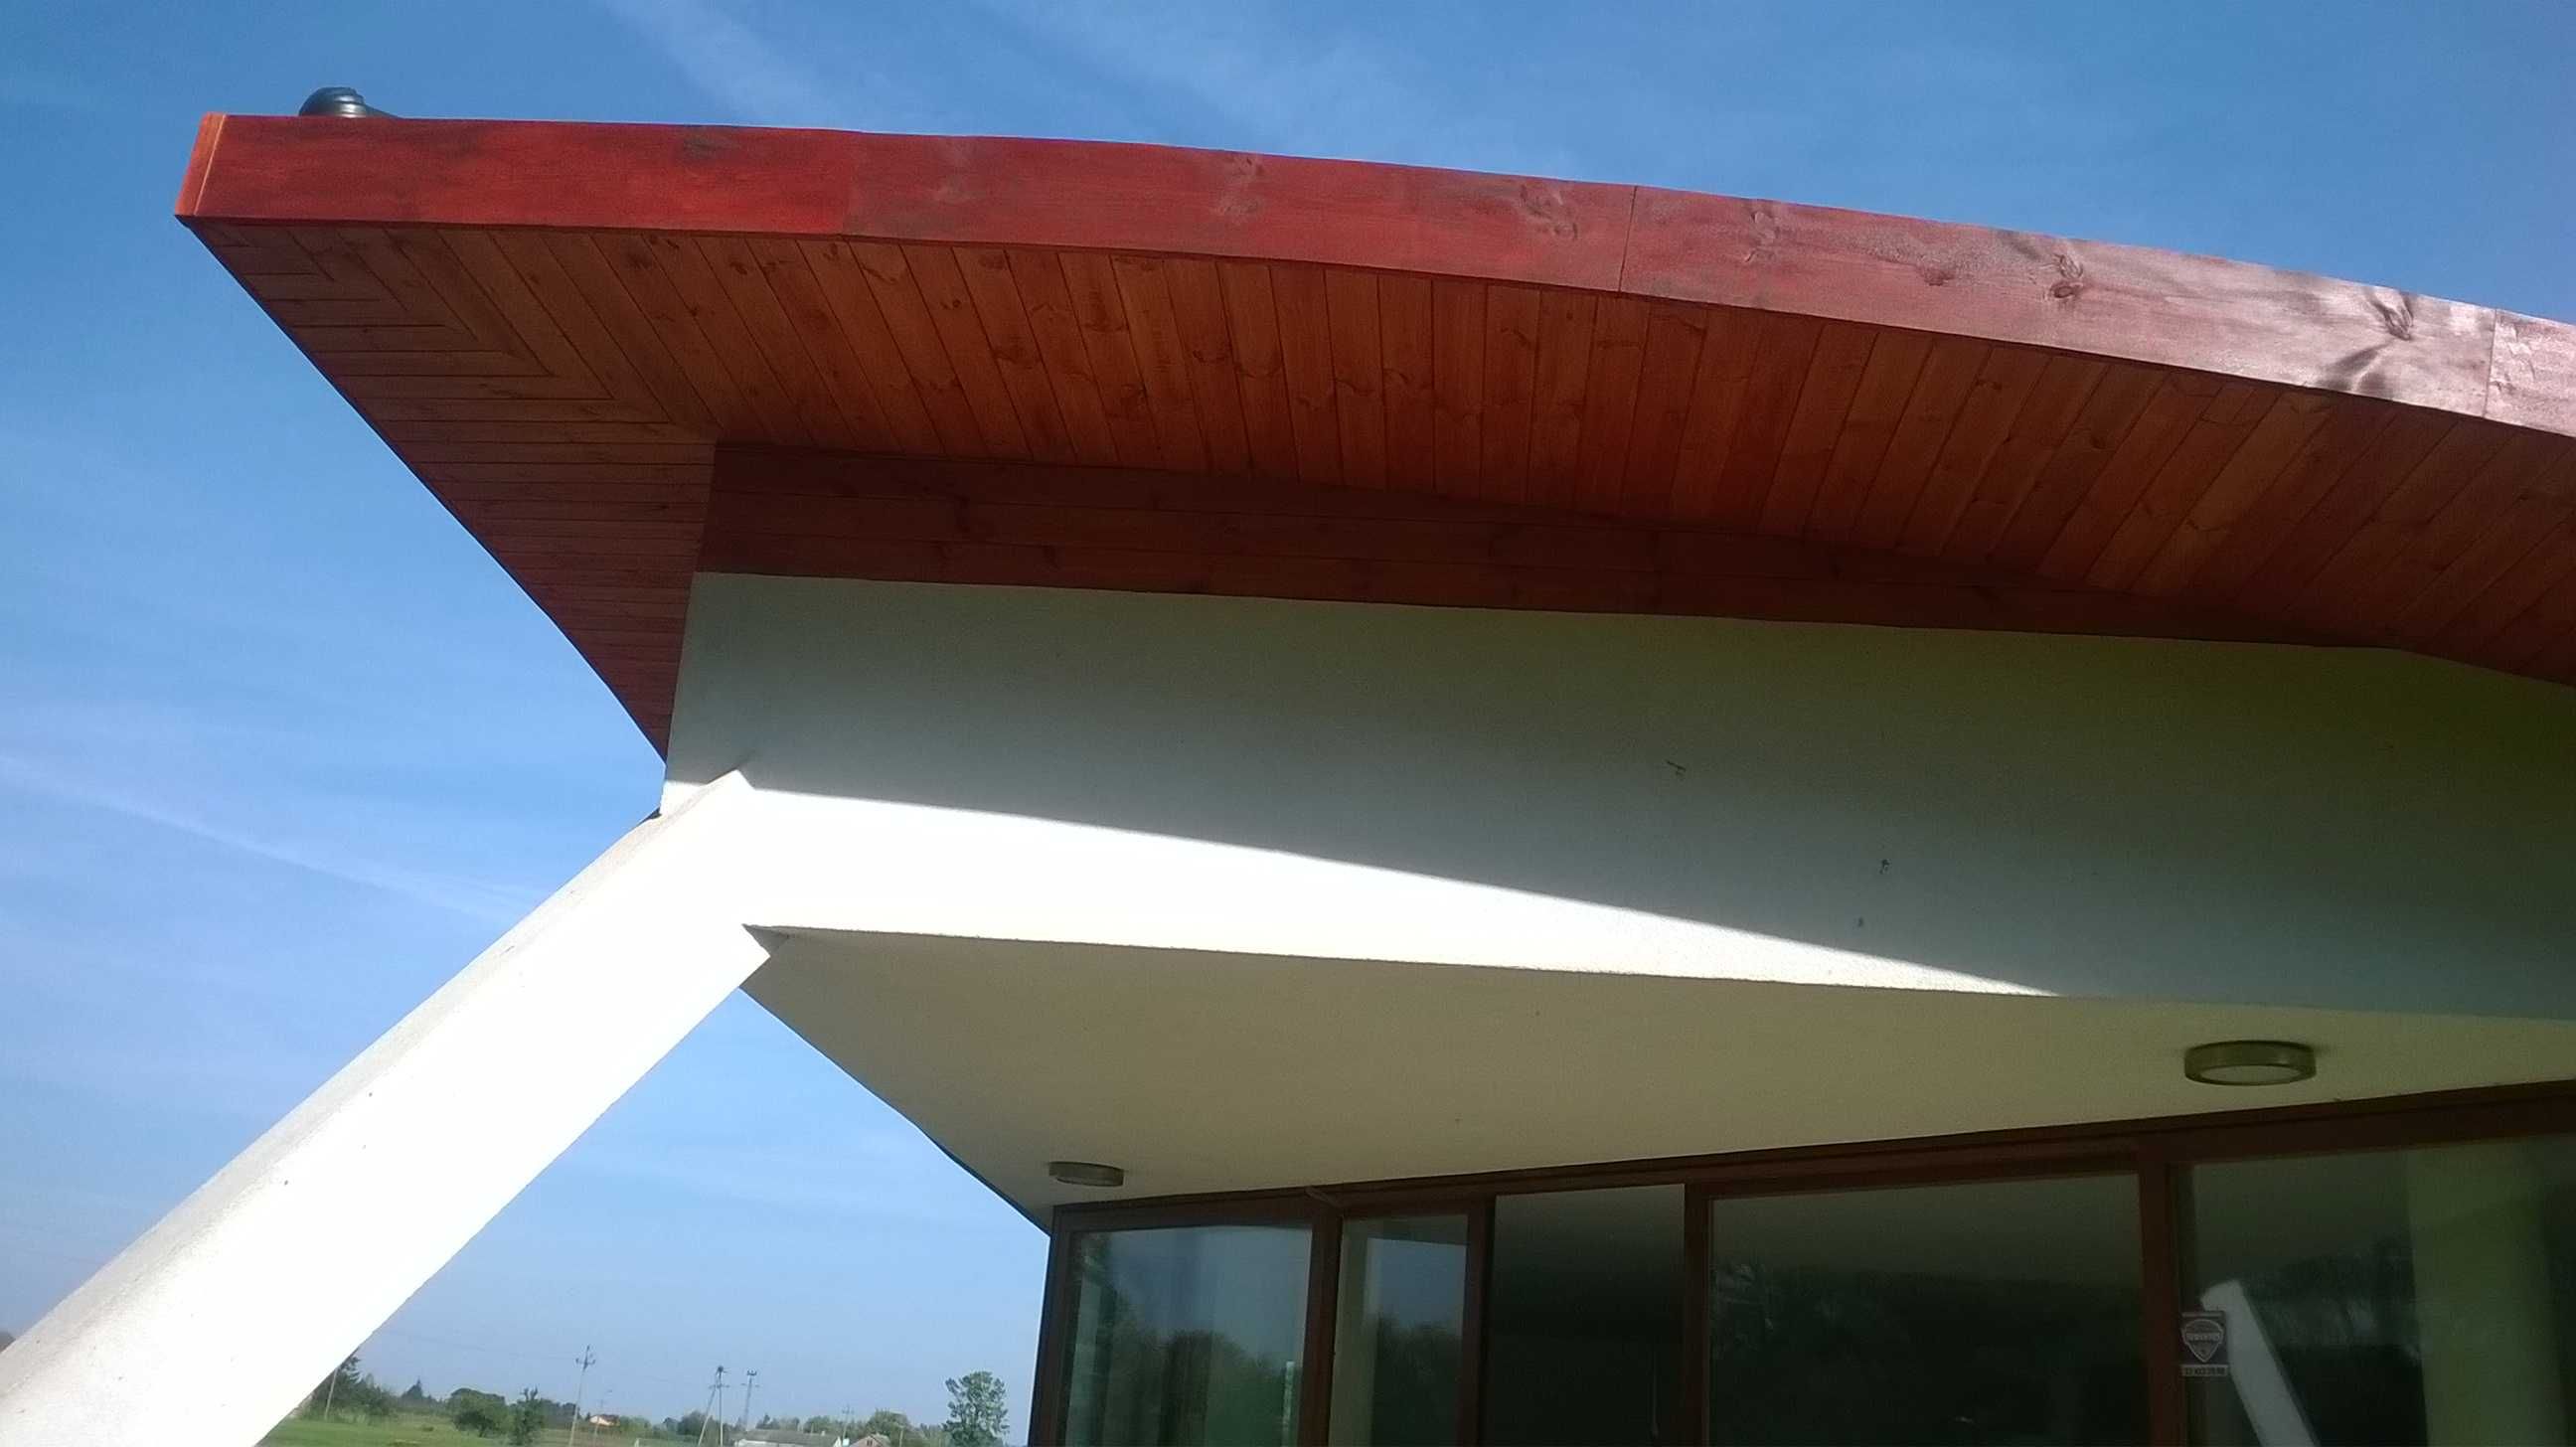 Podbitka dachowa: montaż z materiałem: PCV, blacha, drewno